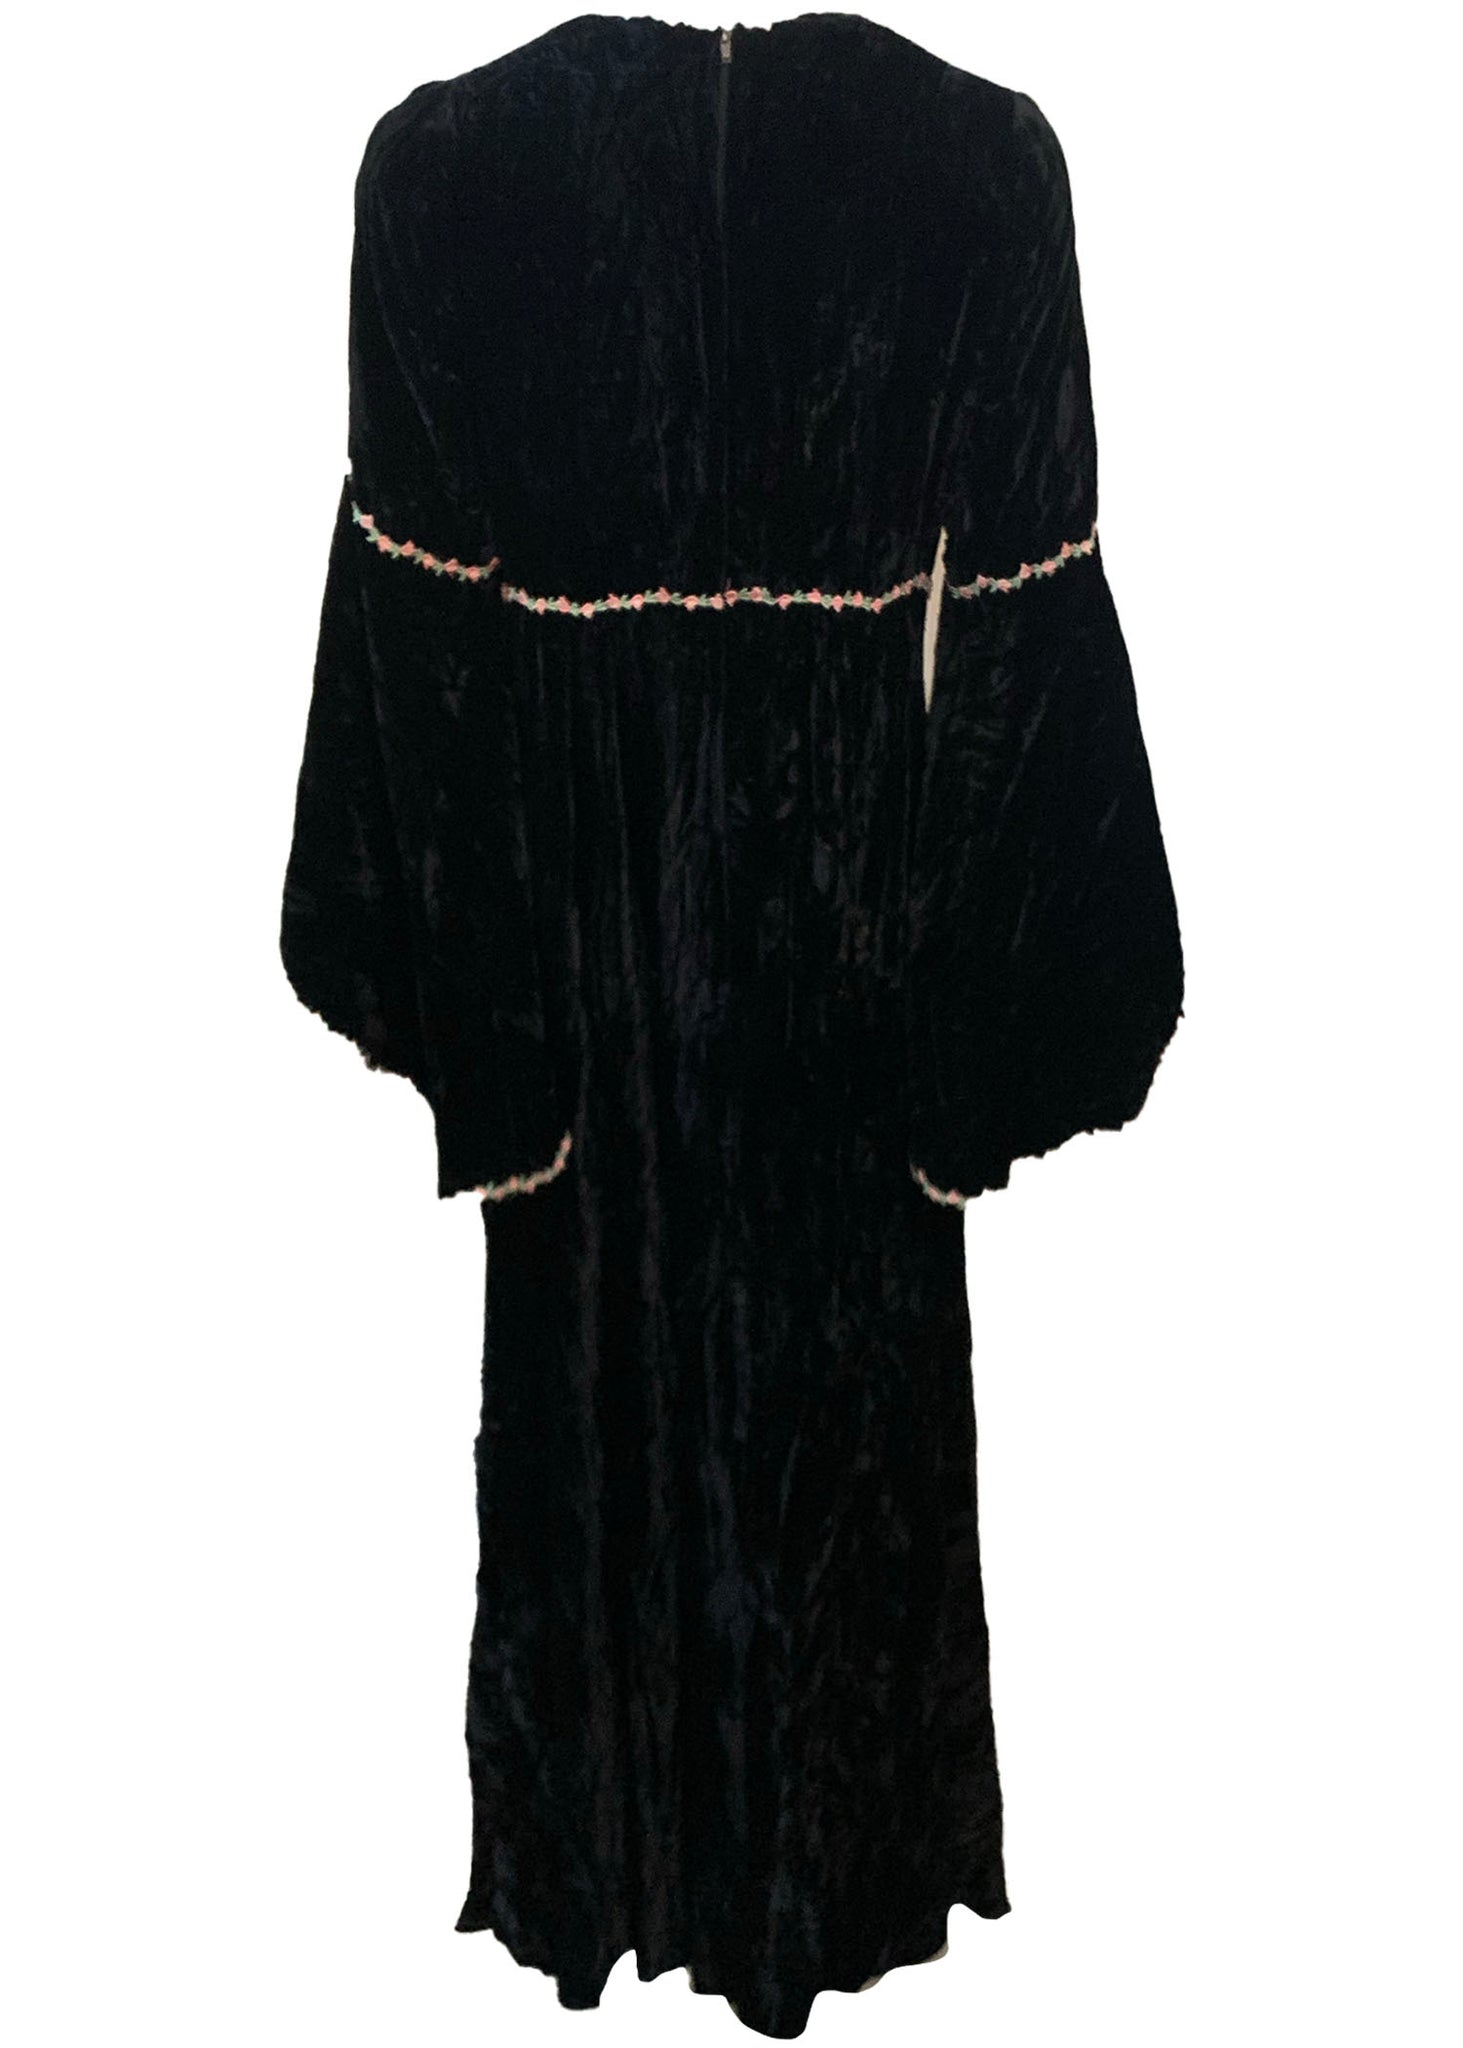  Valerie Corr 60s Black Velvet Neo Renaissance Maxi Dress BACK 2 of 5